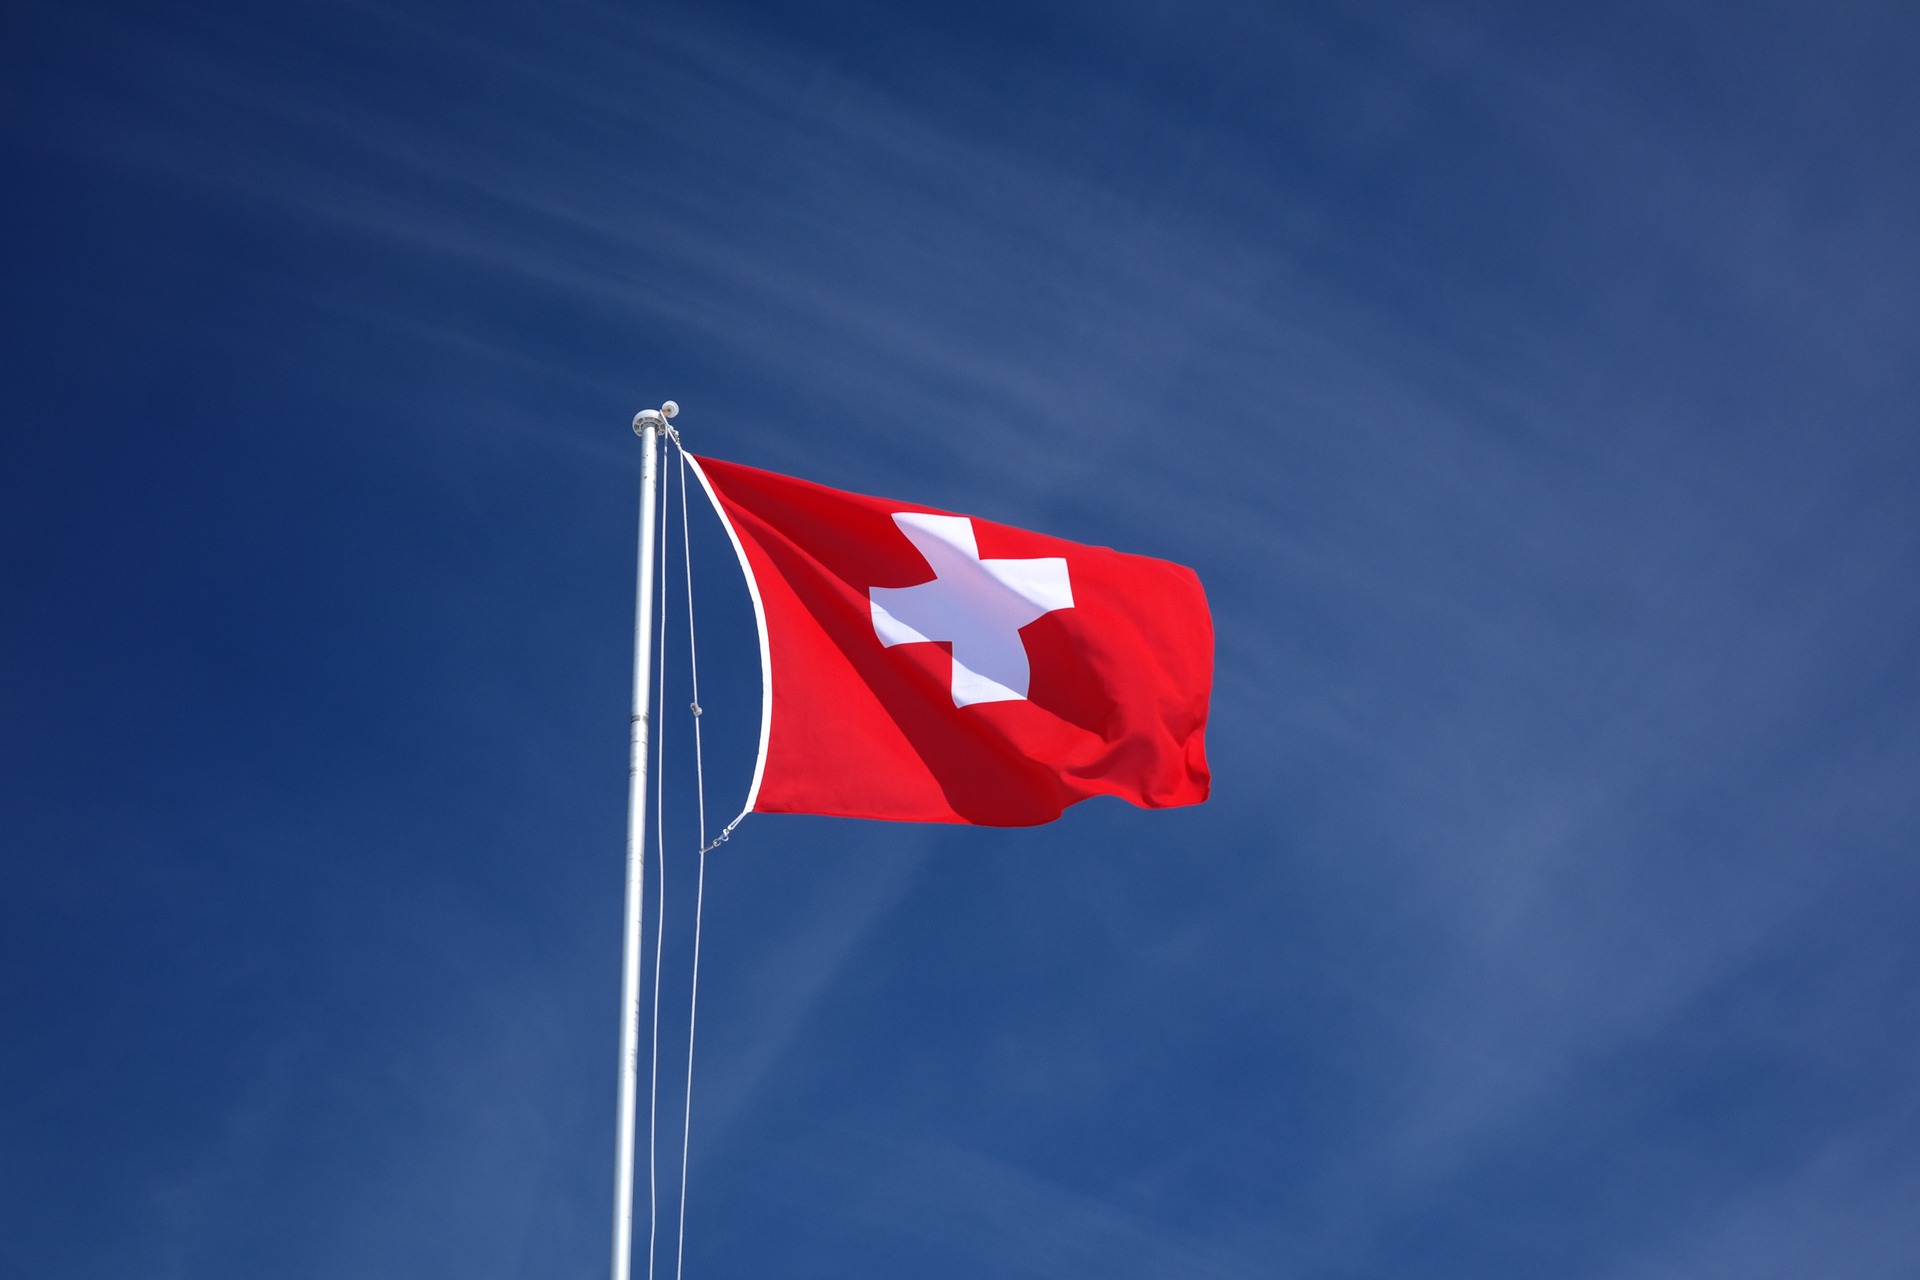 La vente de cannabis avec 1% maximum de THC est légale en suisse